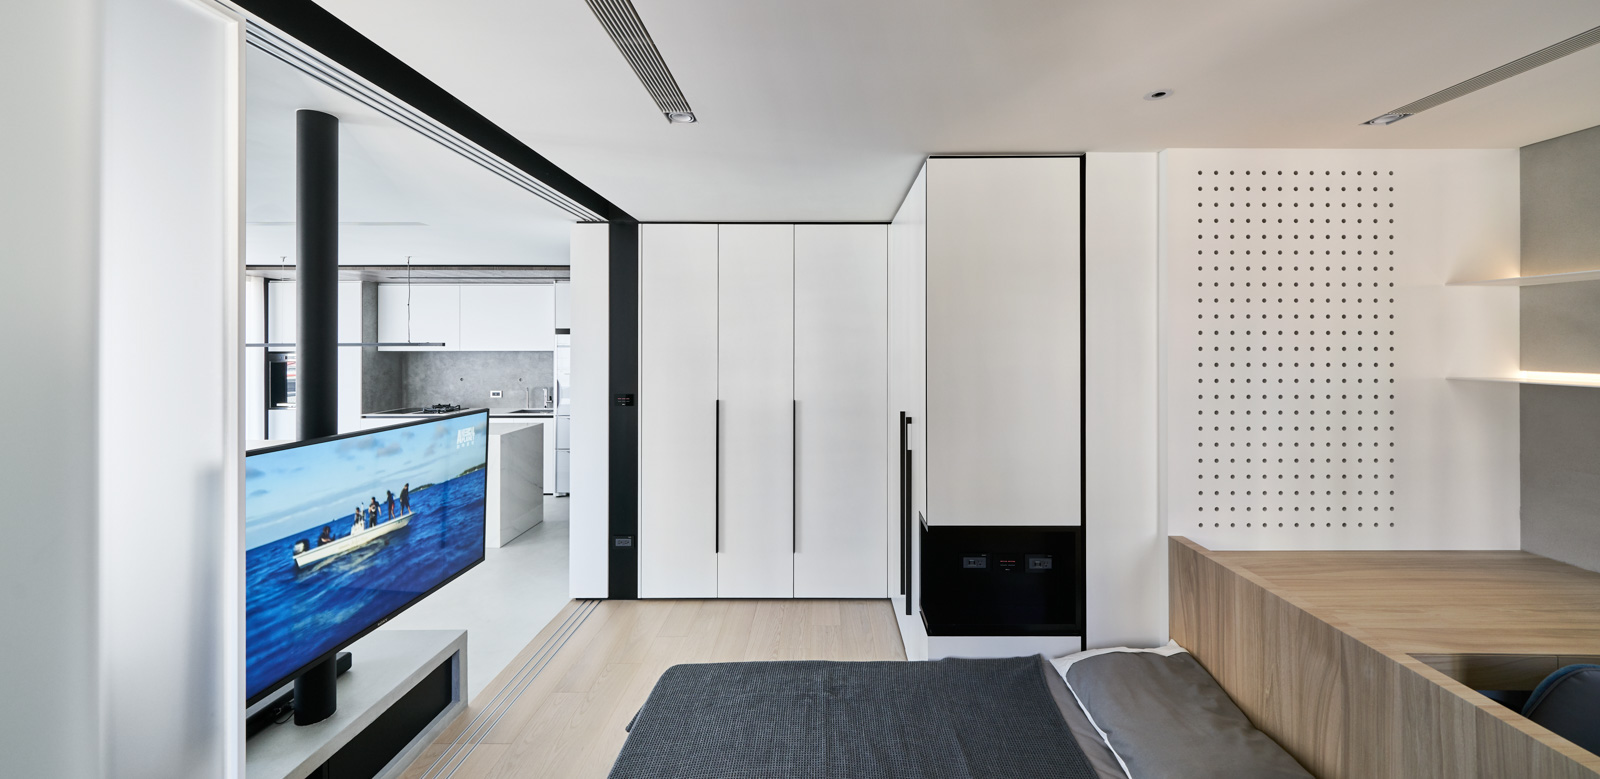 IconP - Thiết kế chung cư căn hộ gam màu trắng đen hiện đại, minimalism